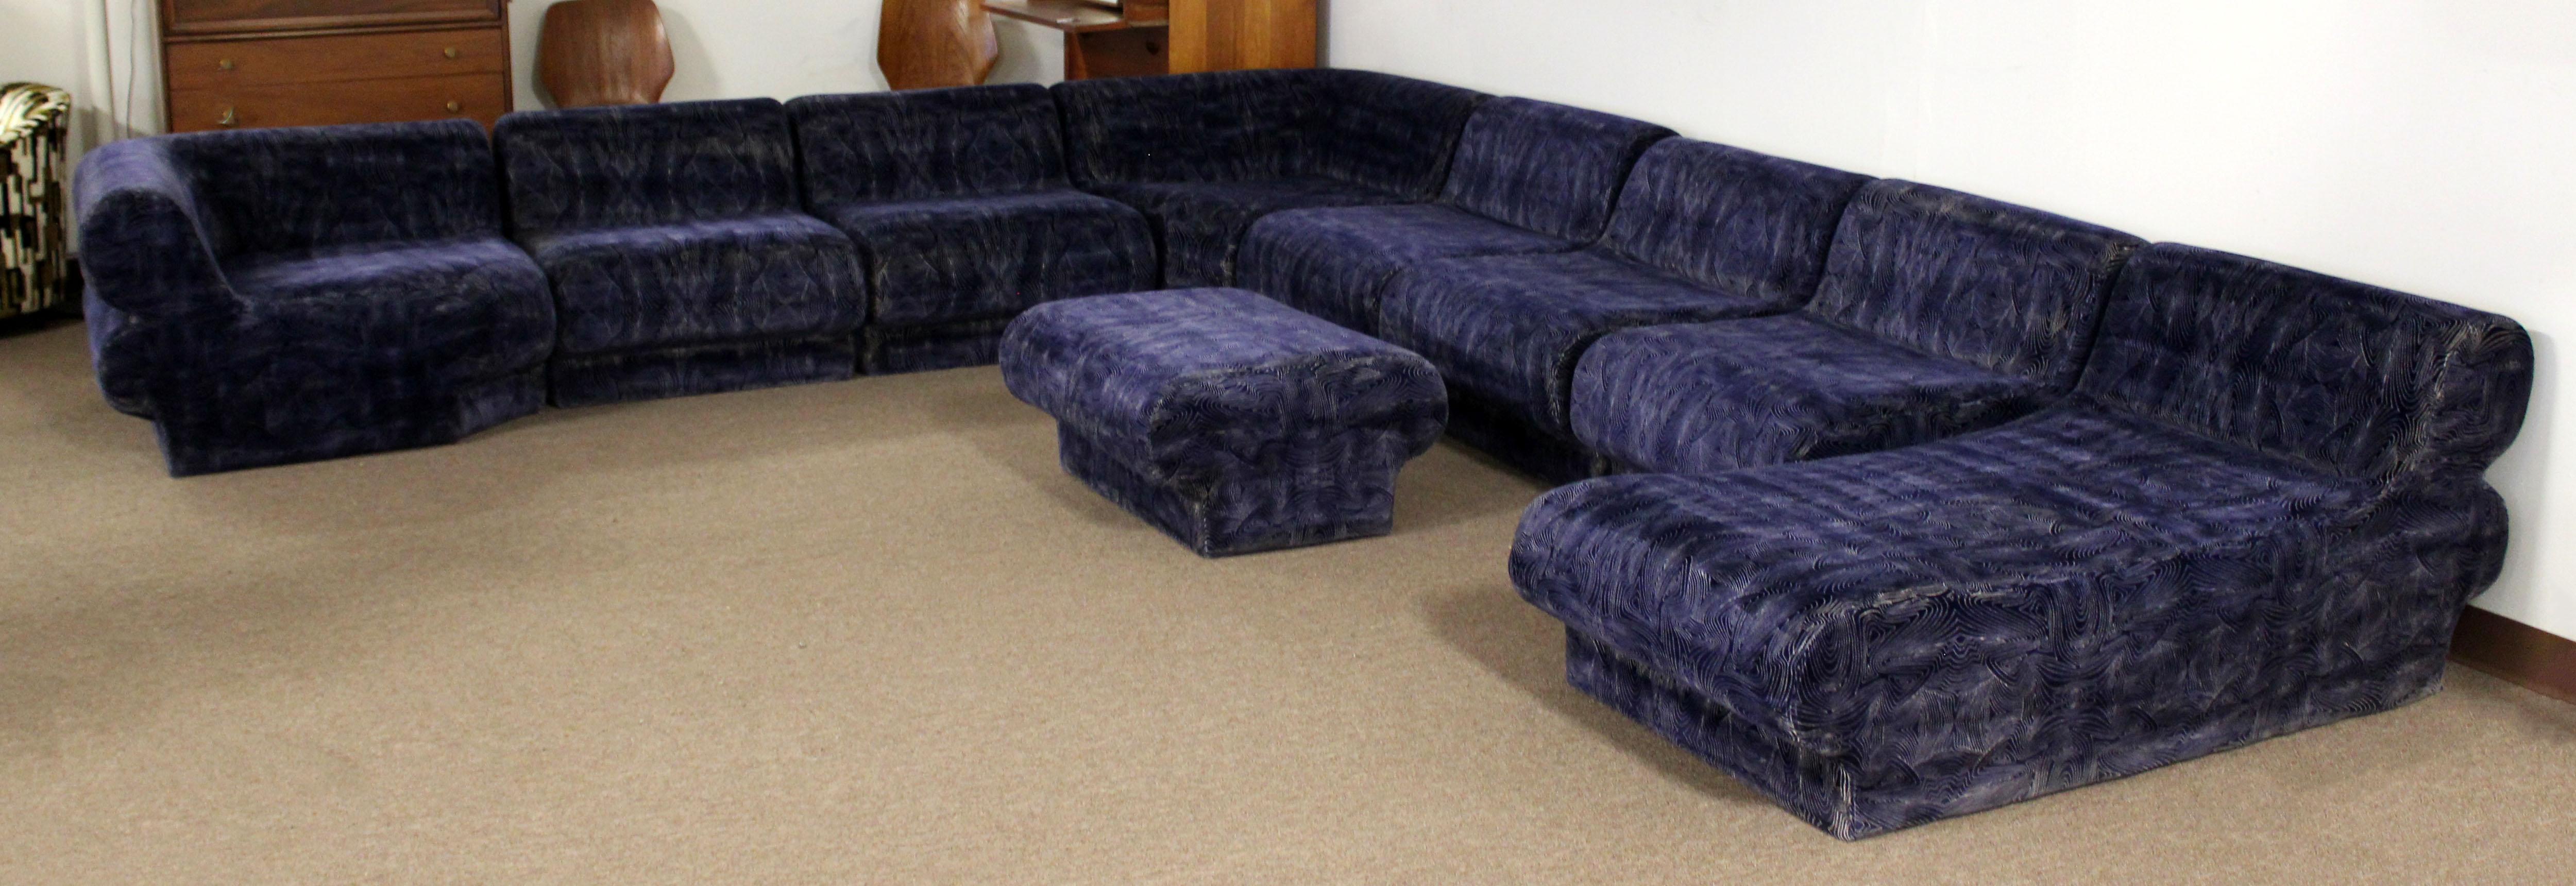 blue velvet sectional couch